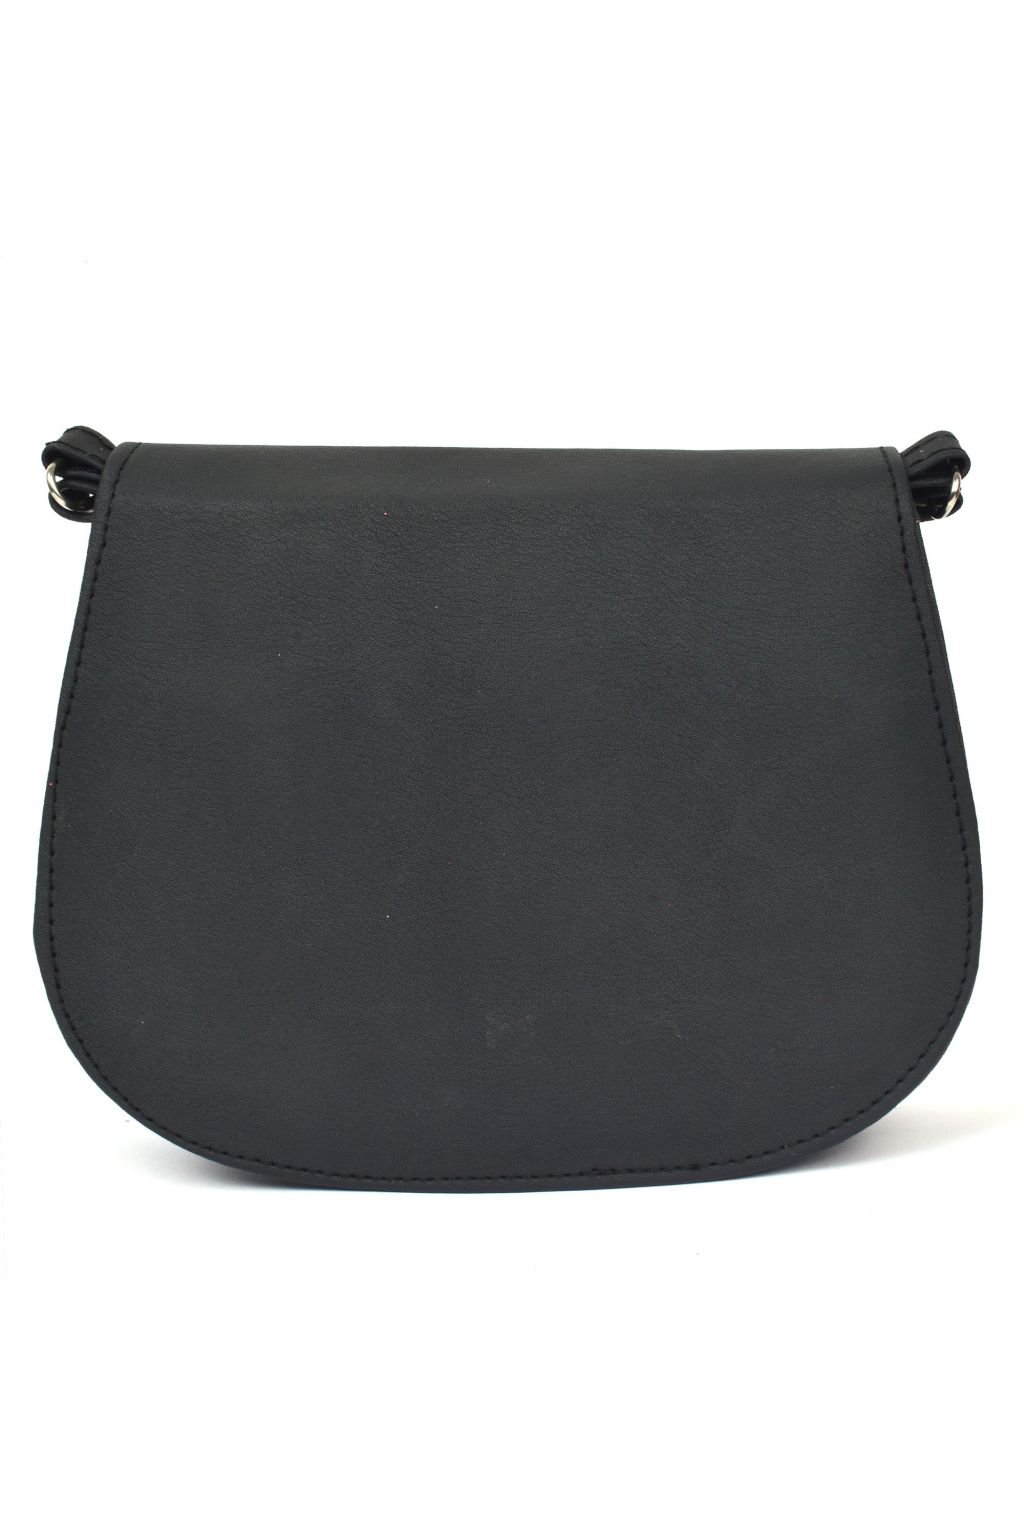 Cute Black Crochet Small Handbag Crossbody Purse Crochet Shoulder Bag –  Feltify